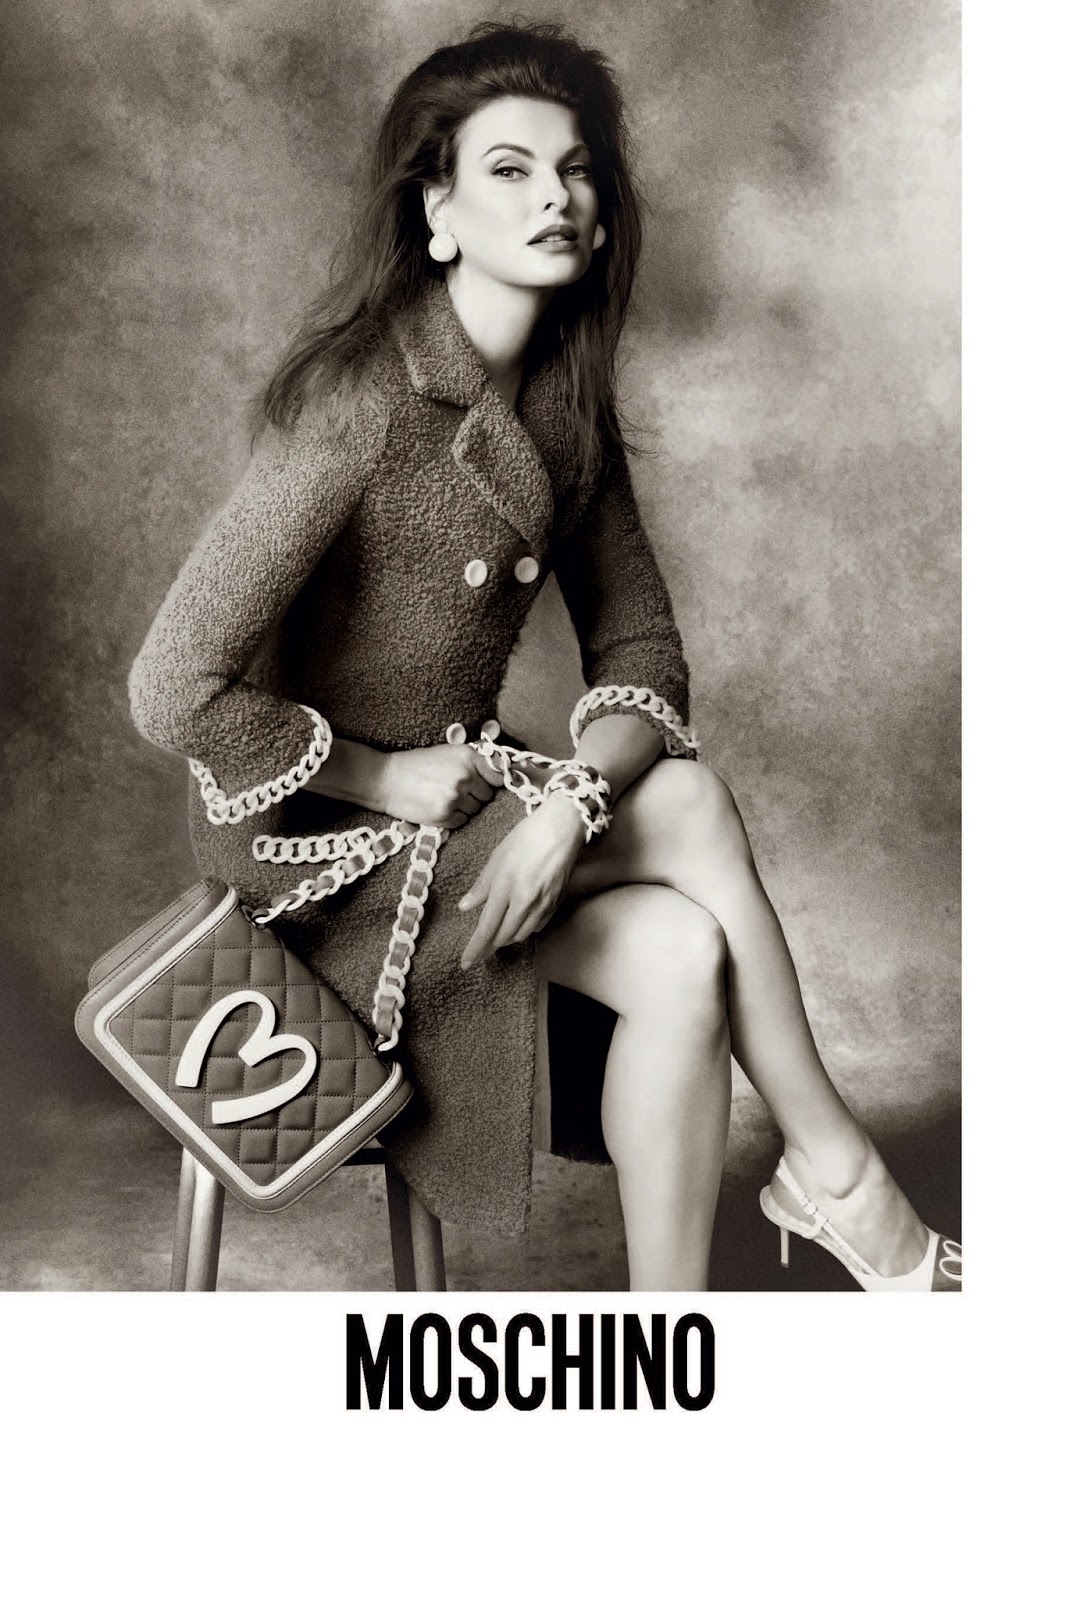 Louis Vuitton S/S 2014 Campaign by Steven Meisel